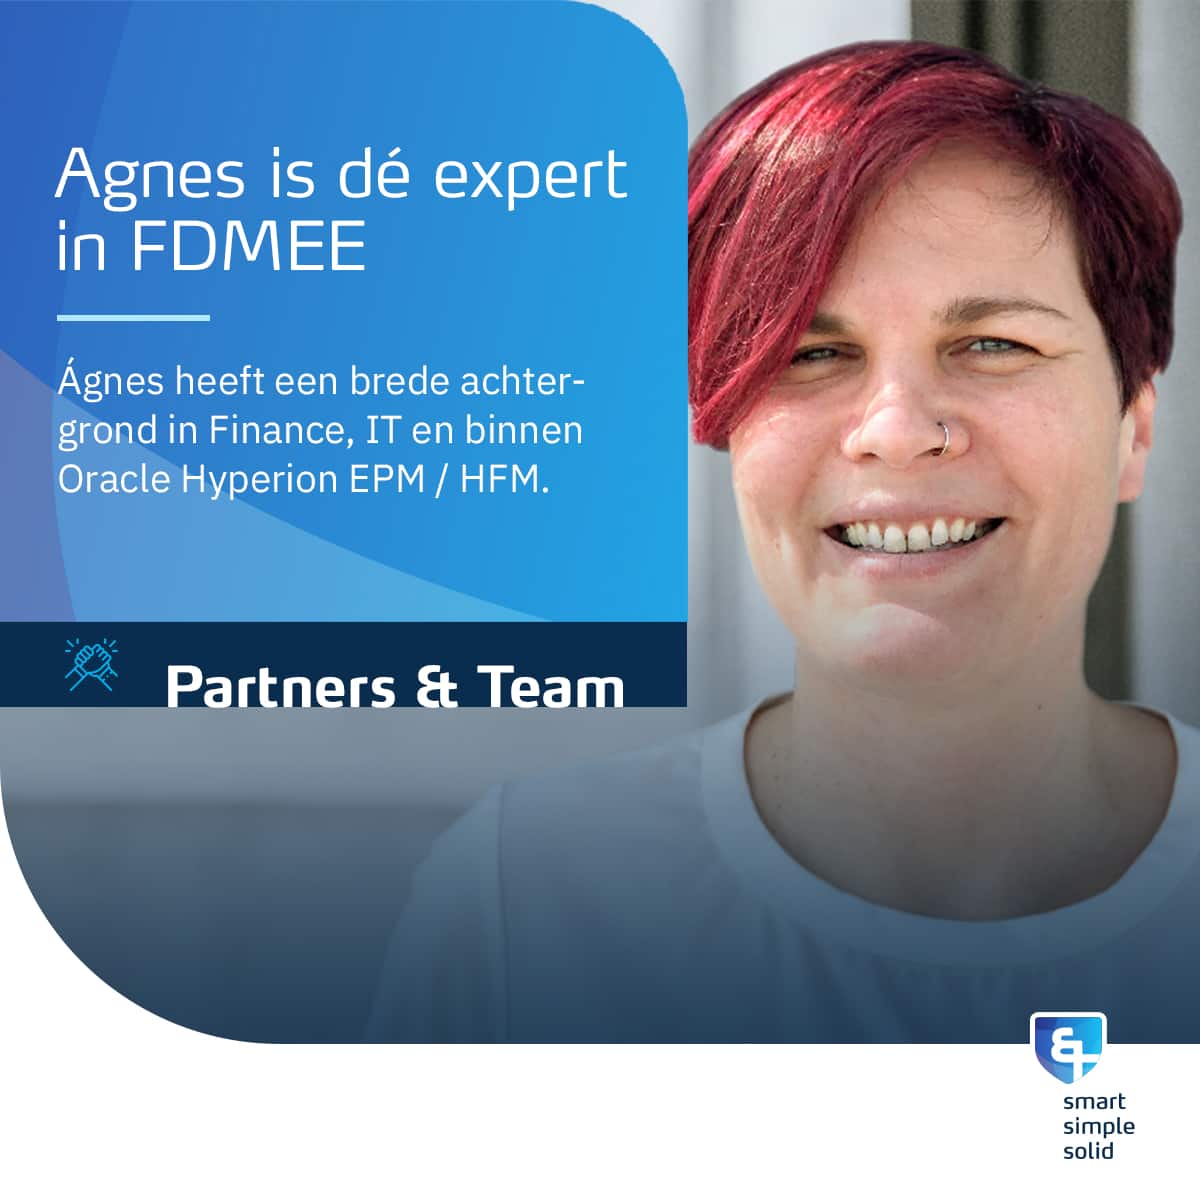 Agnes is dé expert in FDMEE